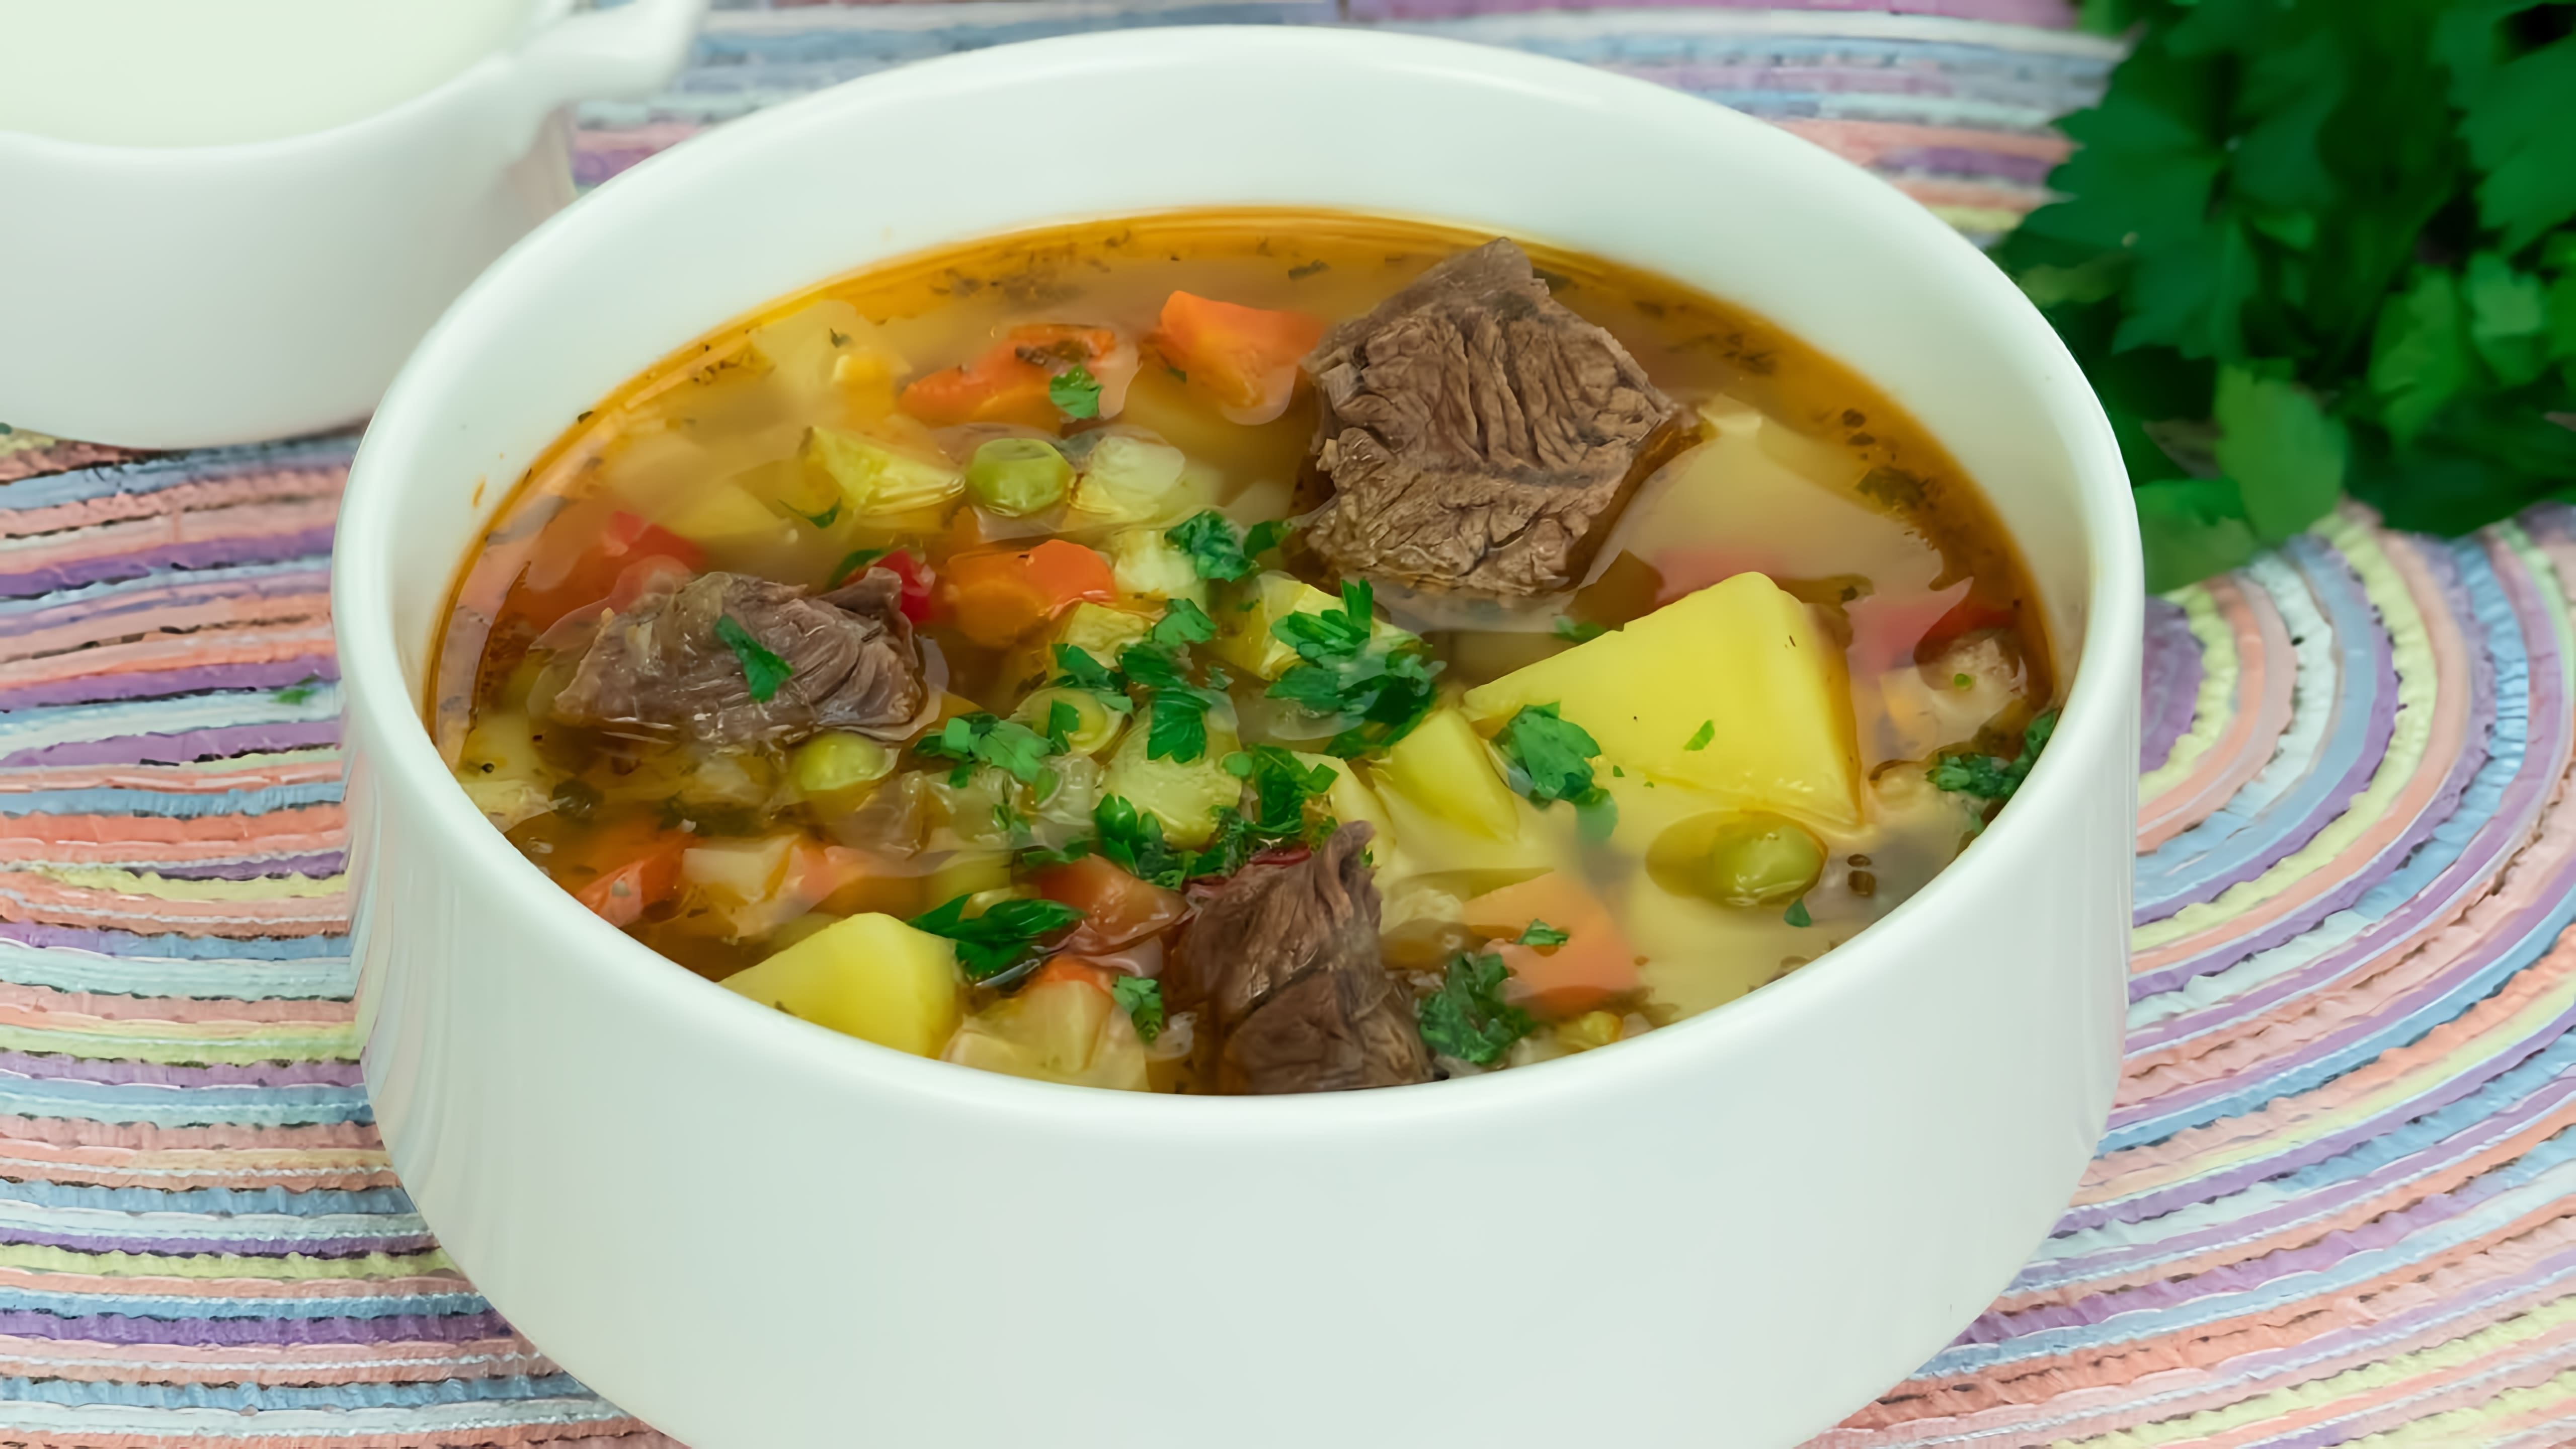 В этом видео-ролике мы увидим, как все участники, включая детей и взрослых, просят добавку к супу с говядиной и овощами